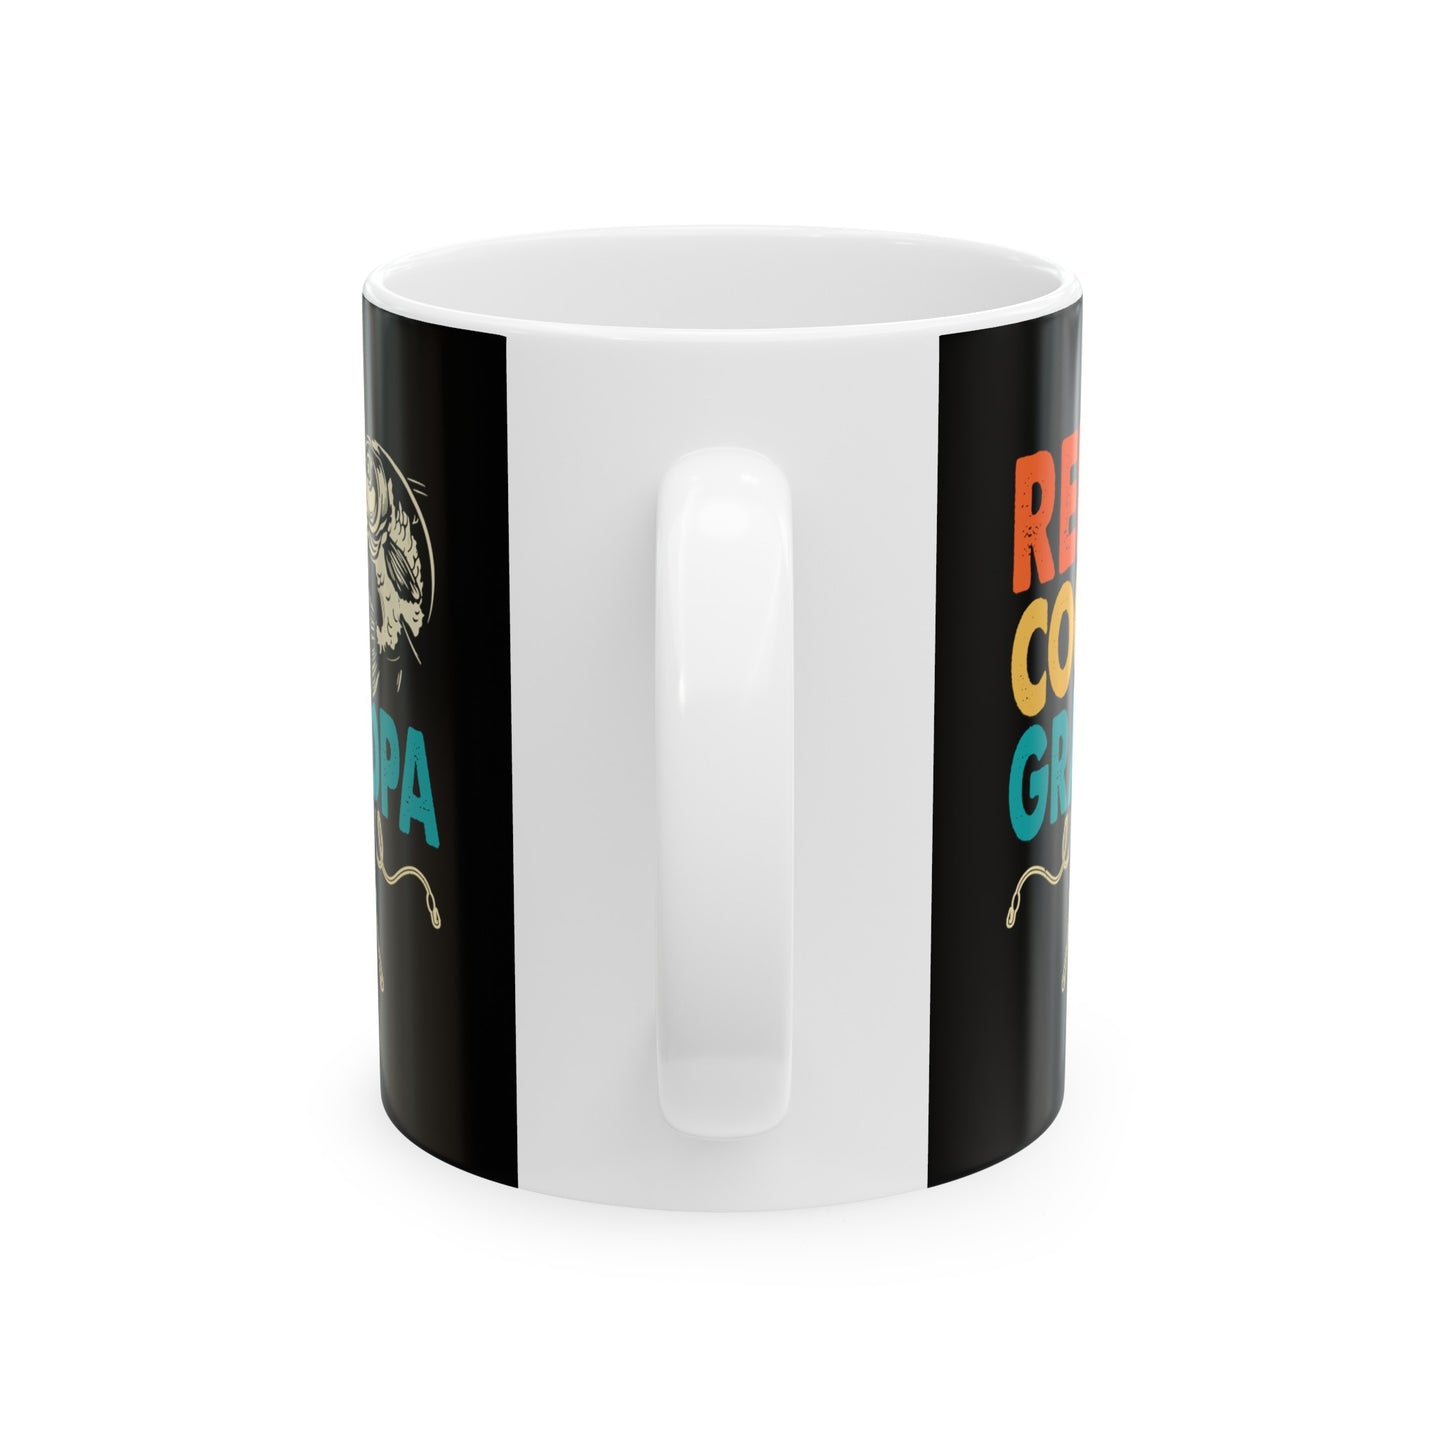 Reel Cool Grandpa Ceramic Mug, 11oz